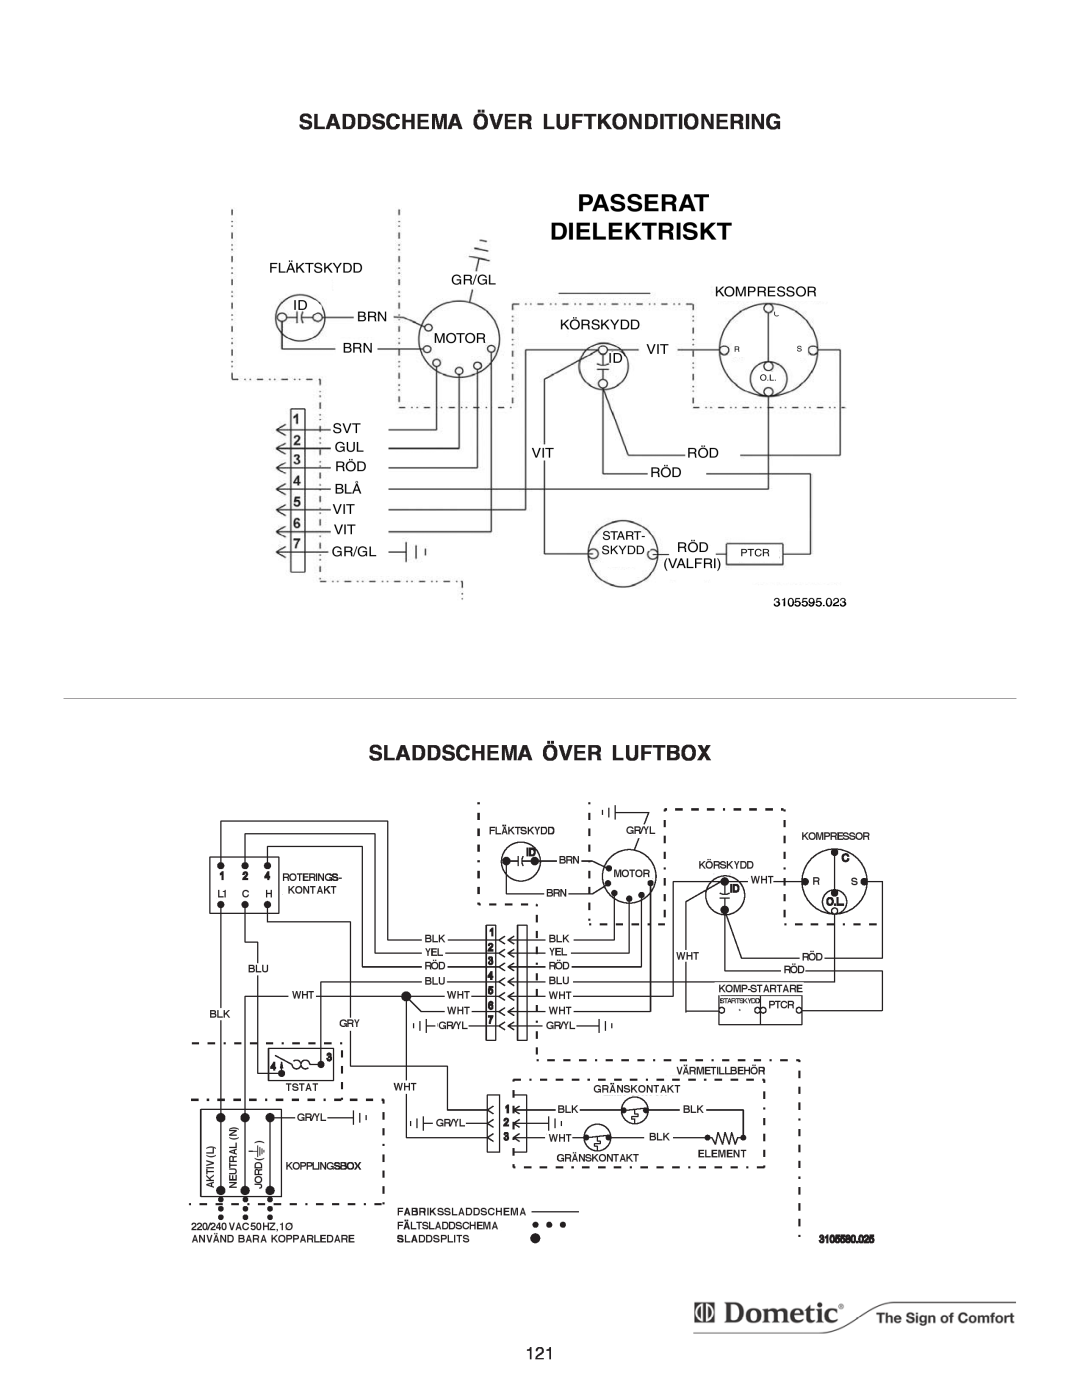 Dometic B3200 manual Passerat, Dielektriskt 